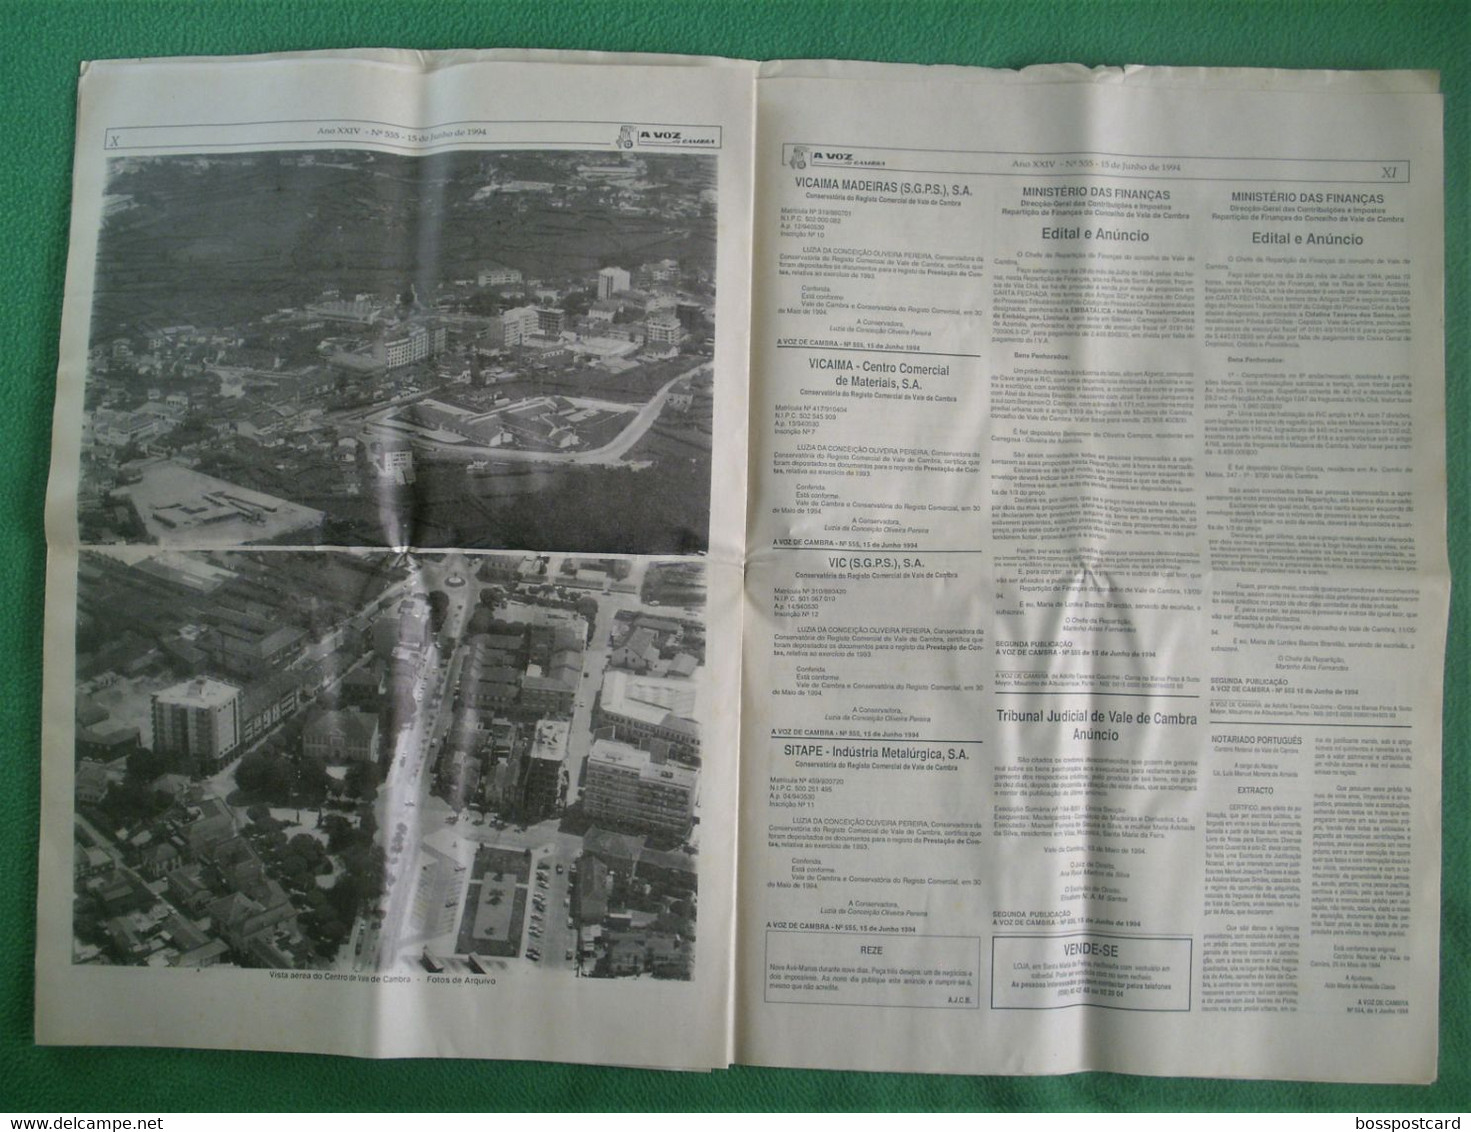 Vale de Cambra - Jornal A Voz de Cambra Nº 555, 15 de Junho de 1994. Aveiro. Portugal.